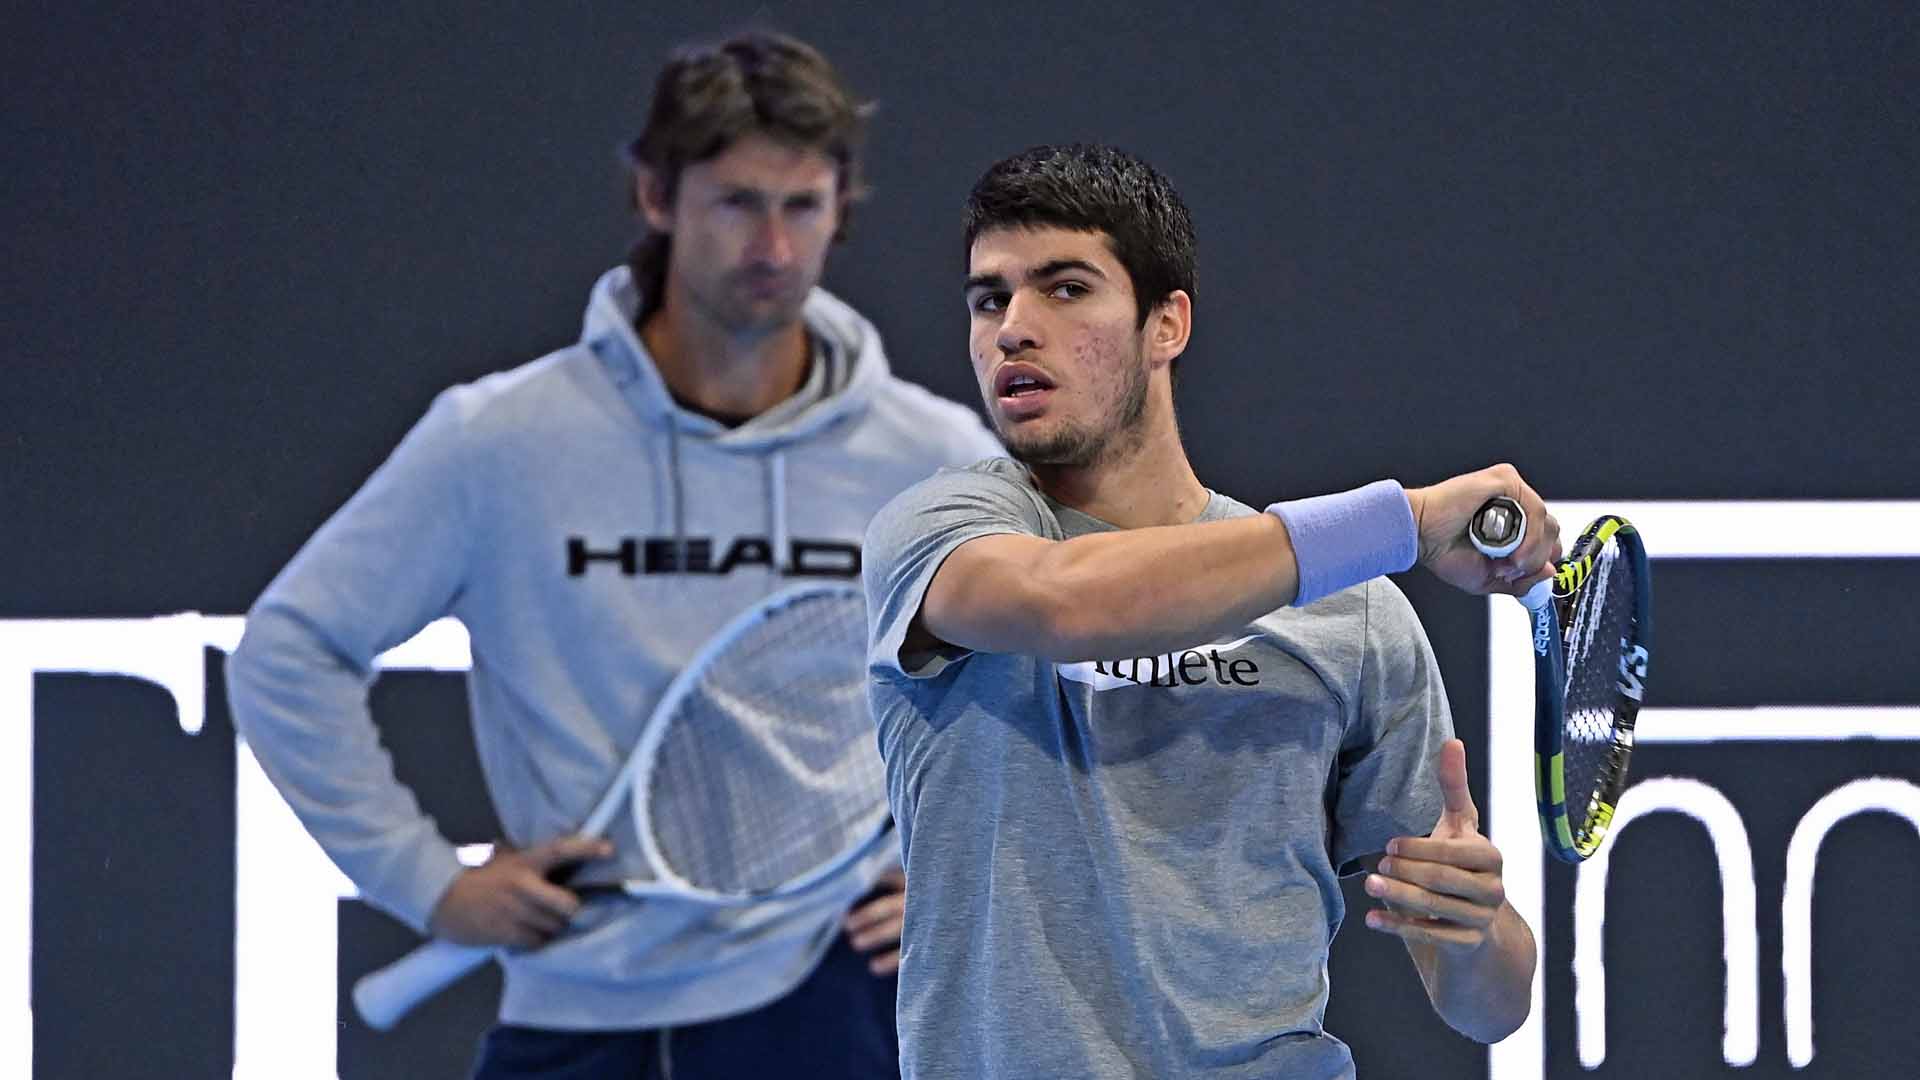 <a href='https://www.atptour.com/en/players/juan-carlos-ferrero/f316/overview'>Juan Carlos Ferrero</a>